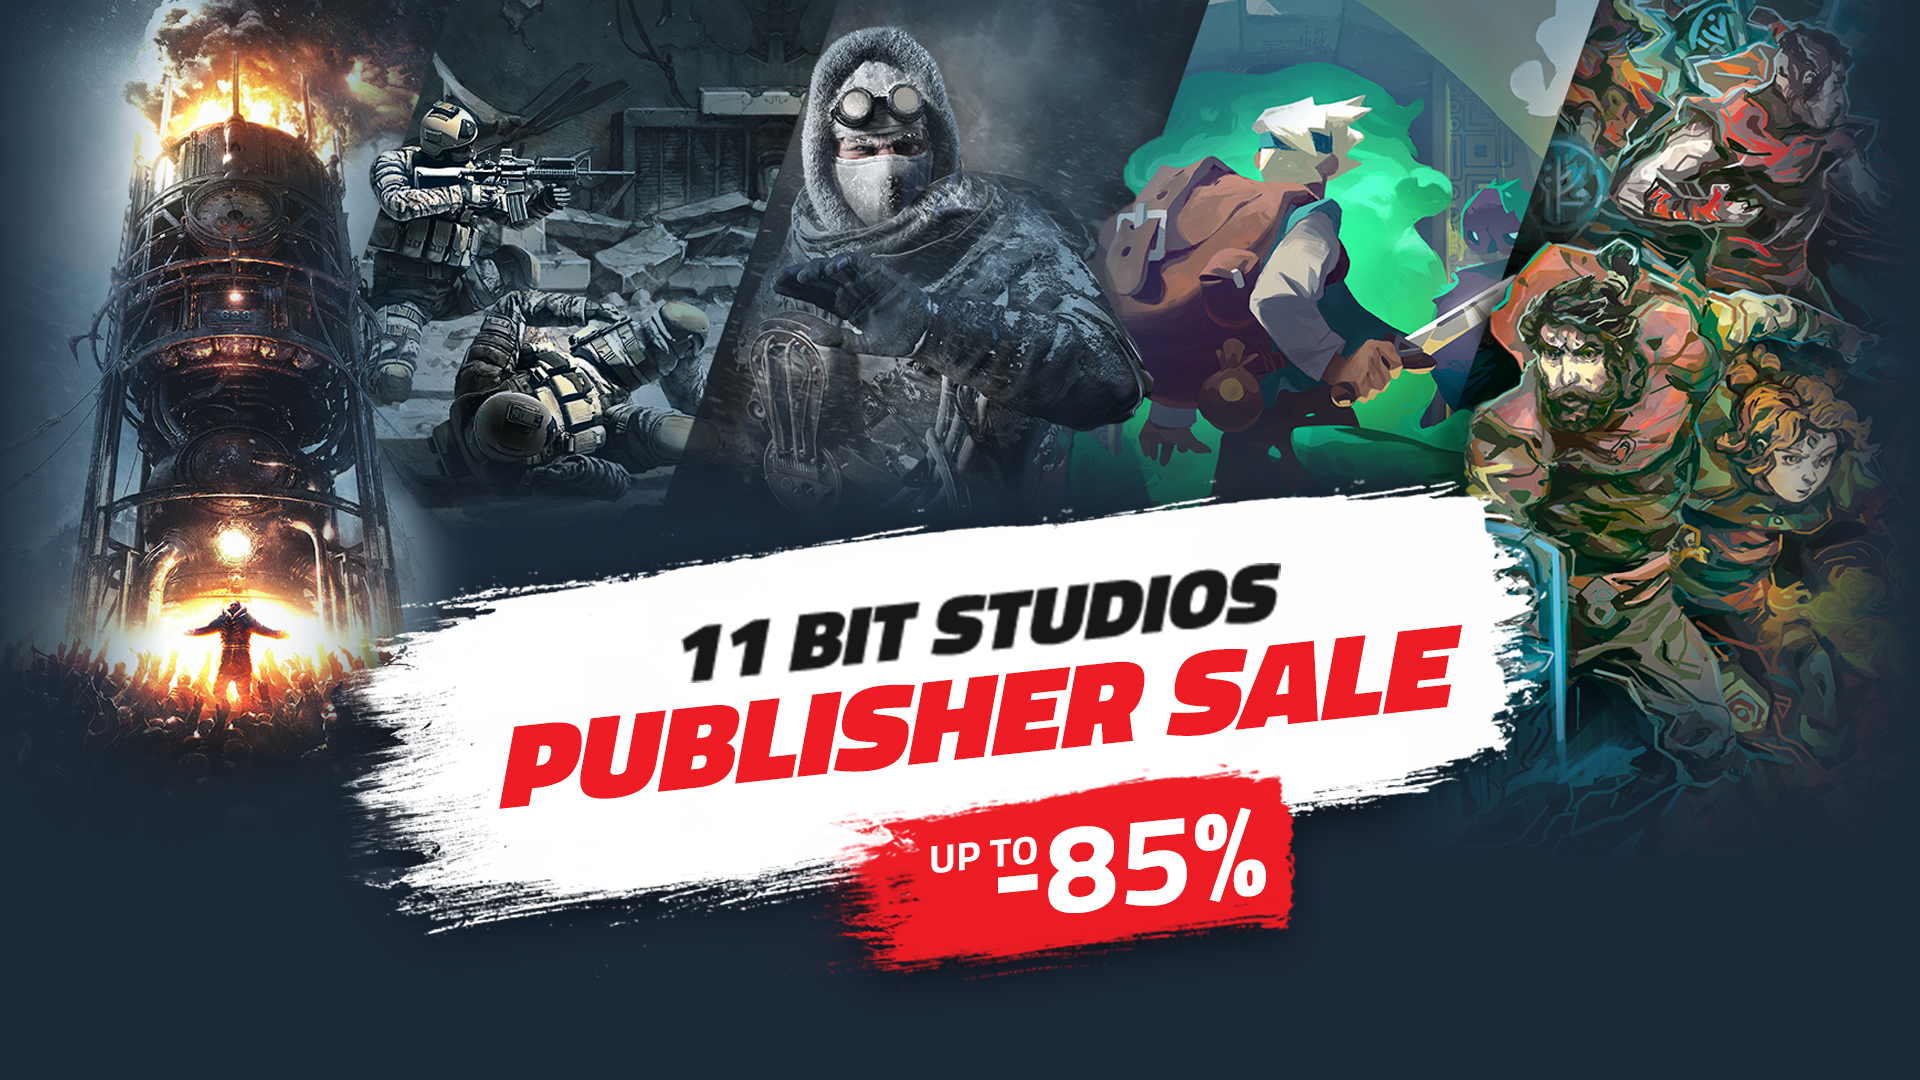 Frostpunk, Moonlighter и This War of Mine — в Steam стартовала распродажа игр 11 bit studios со скидками до 90 %